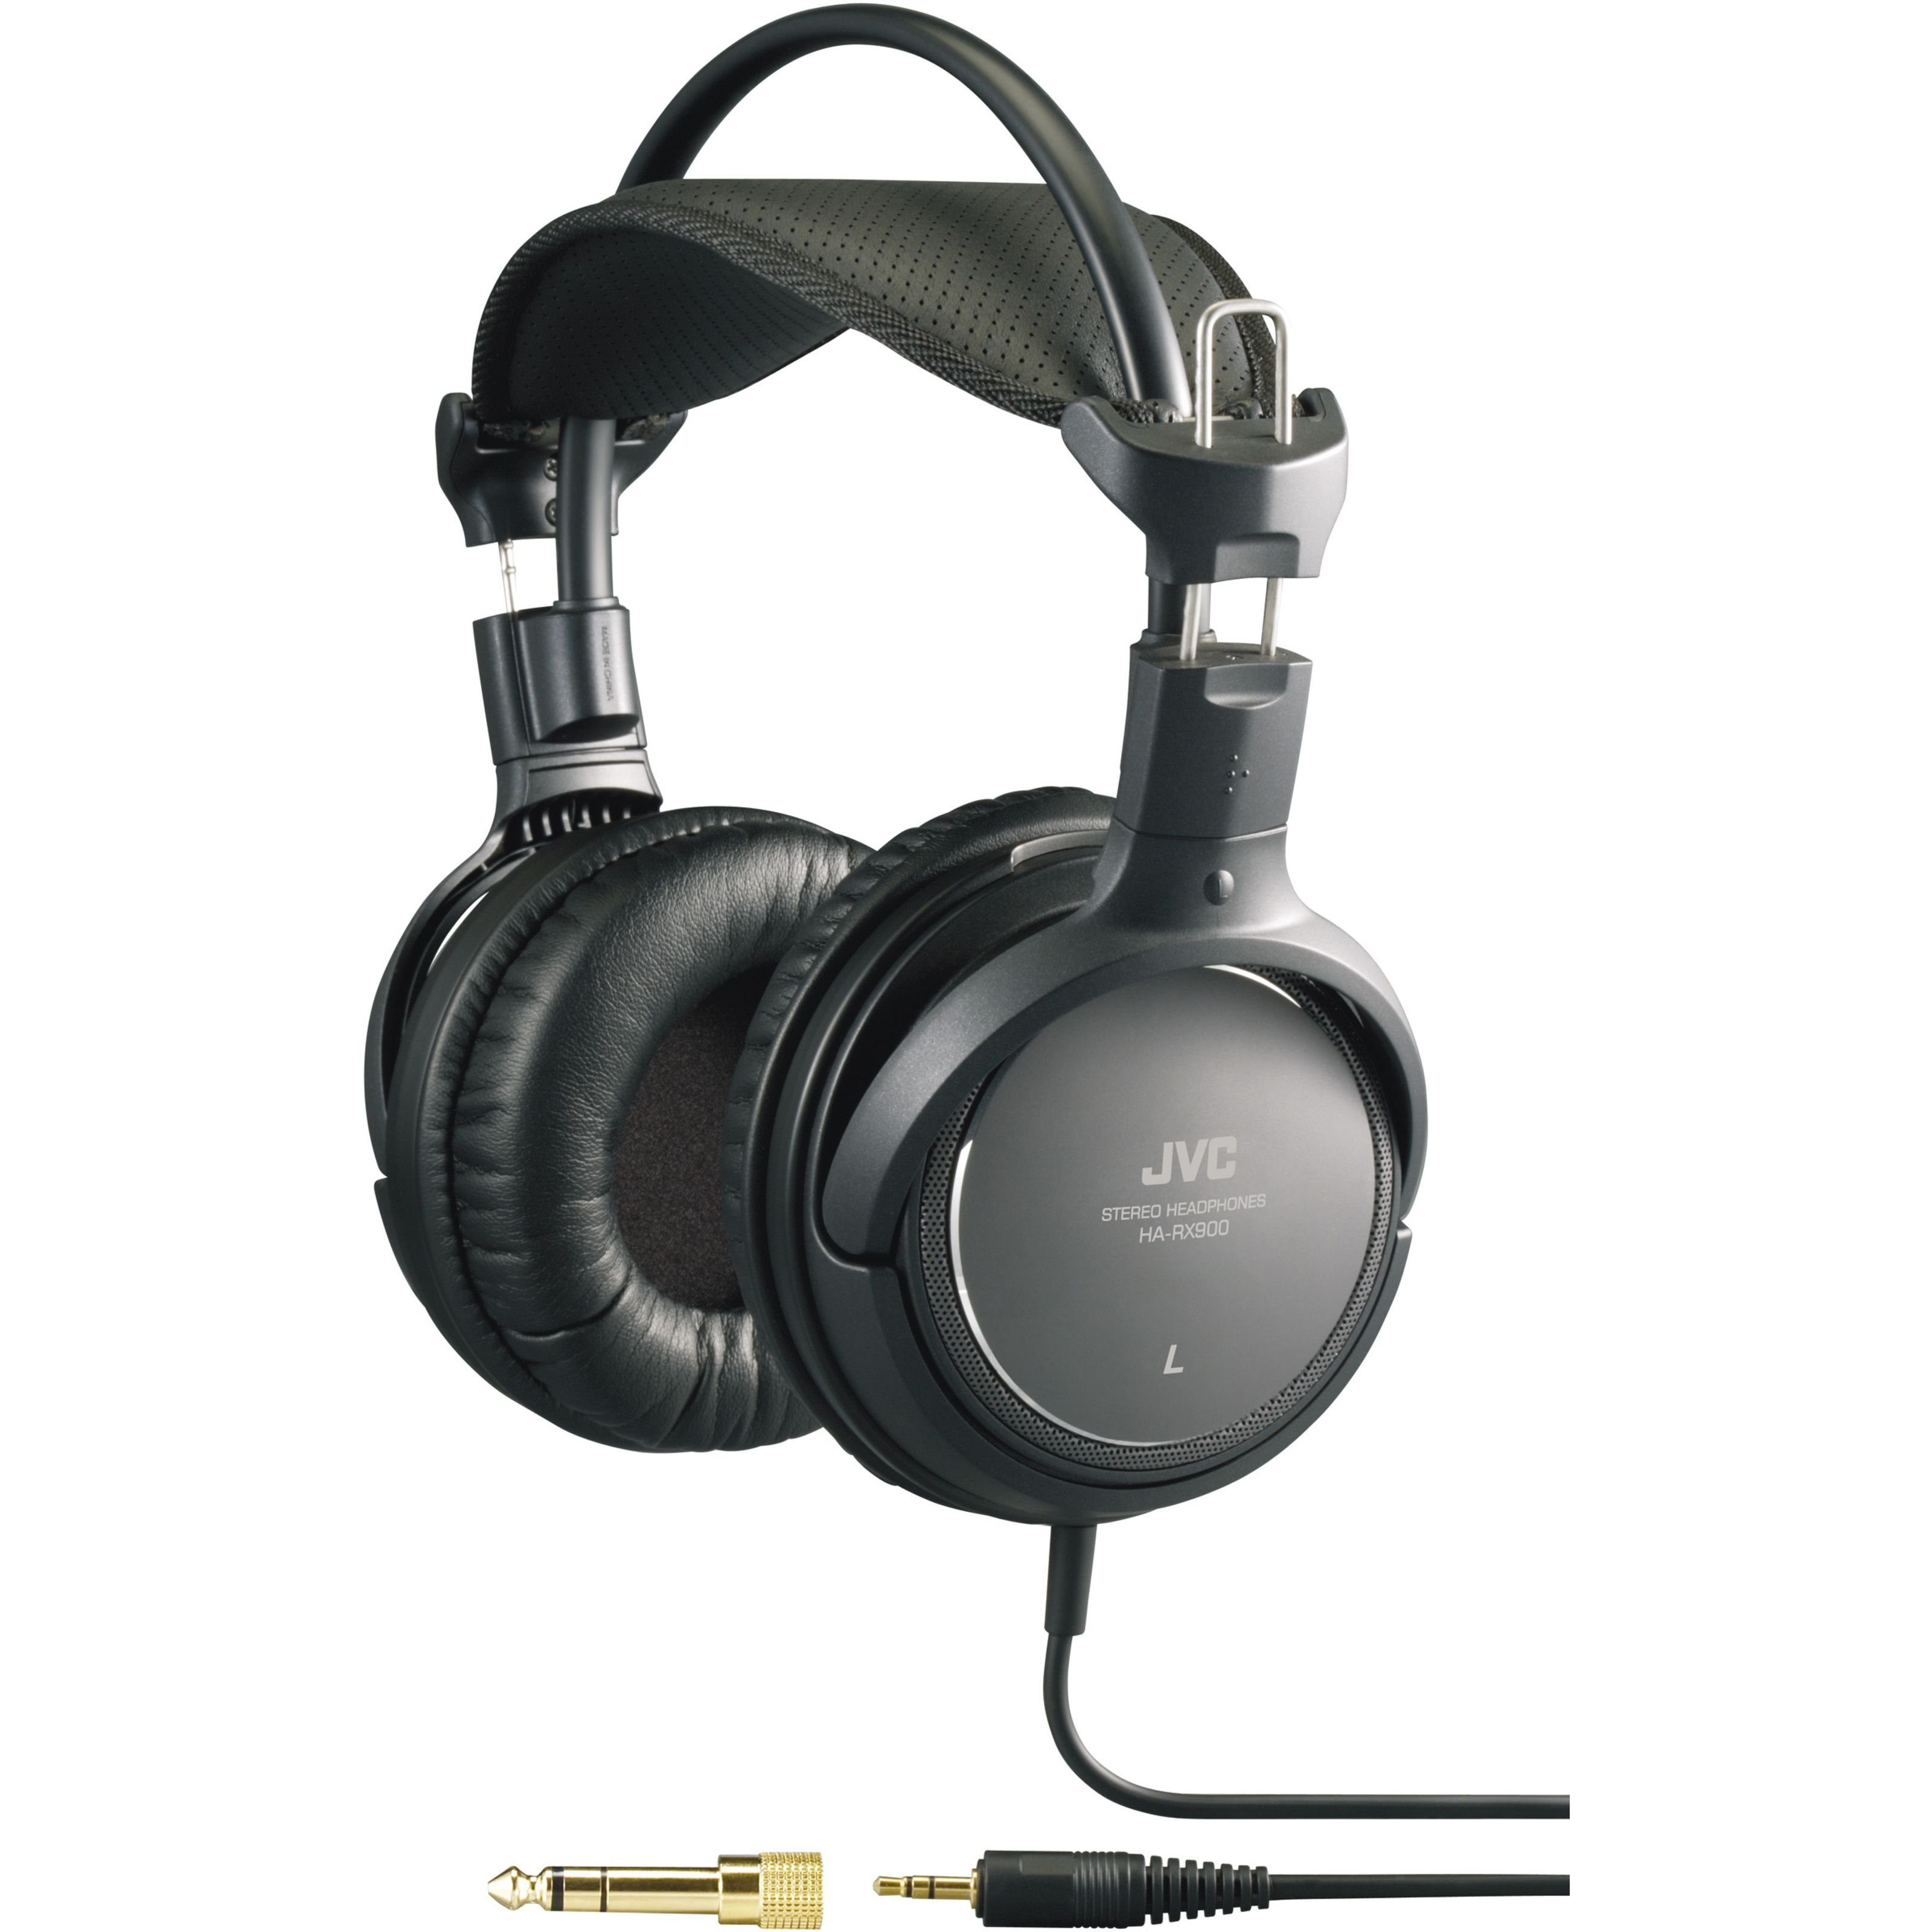 Kopfhörer) Over-Ear-Kopfhörer (HA-RX 900 JVC